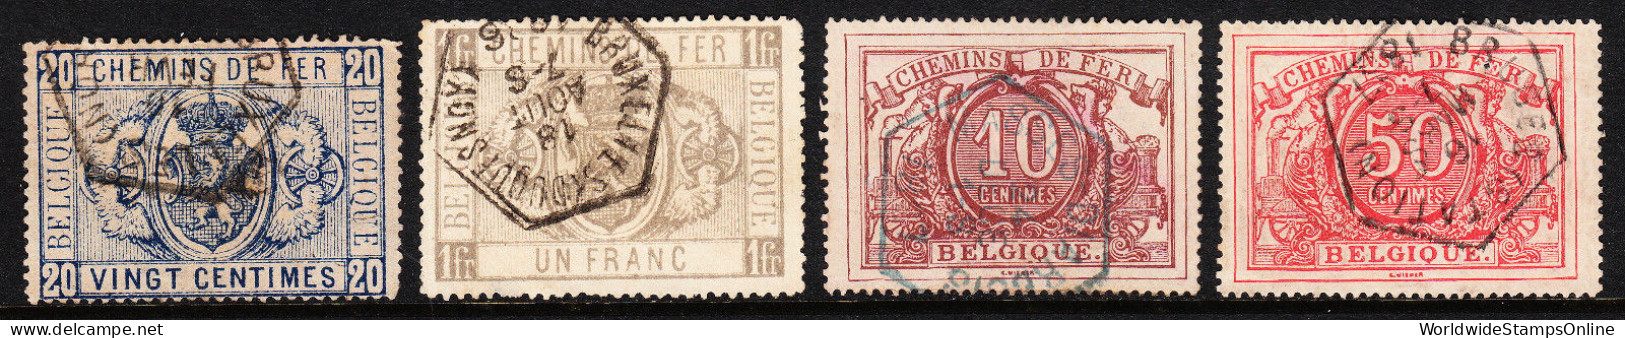 BELGIUM — SCOTT Q2//Q11 — 1879-1886 RAILWAY ISSUES — USED — SCV $37.50 - Postfris